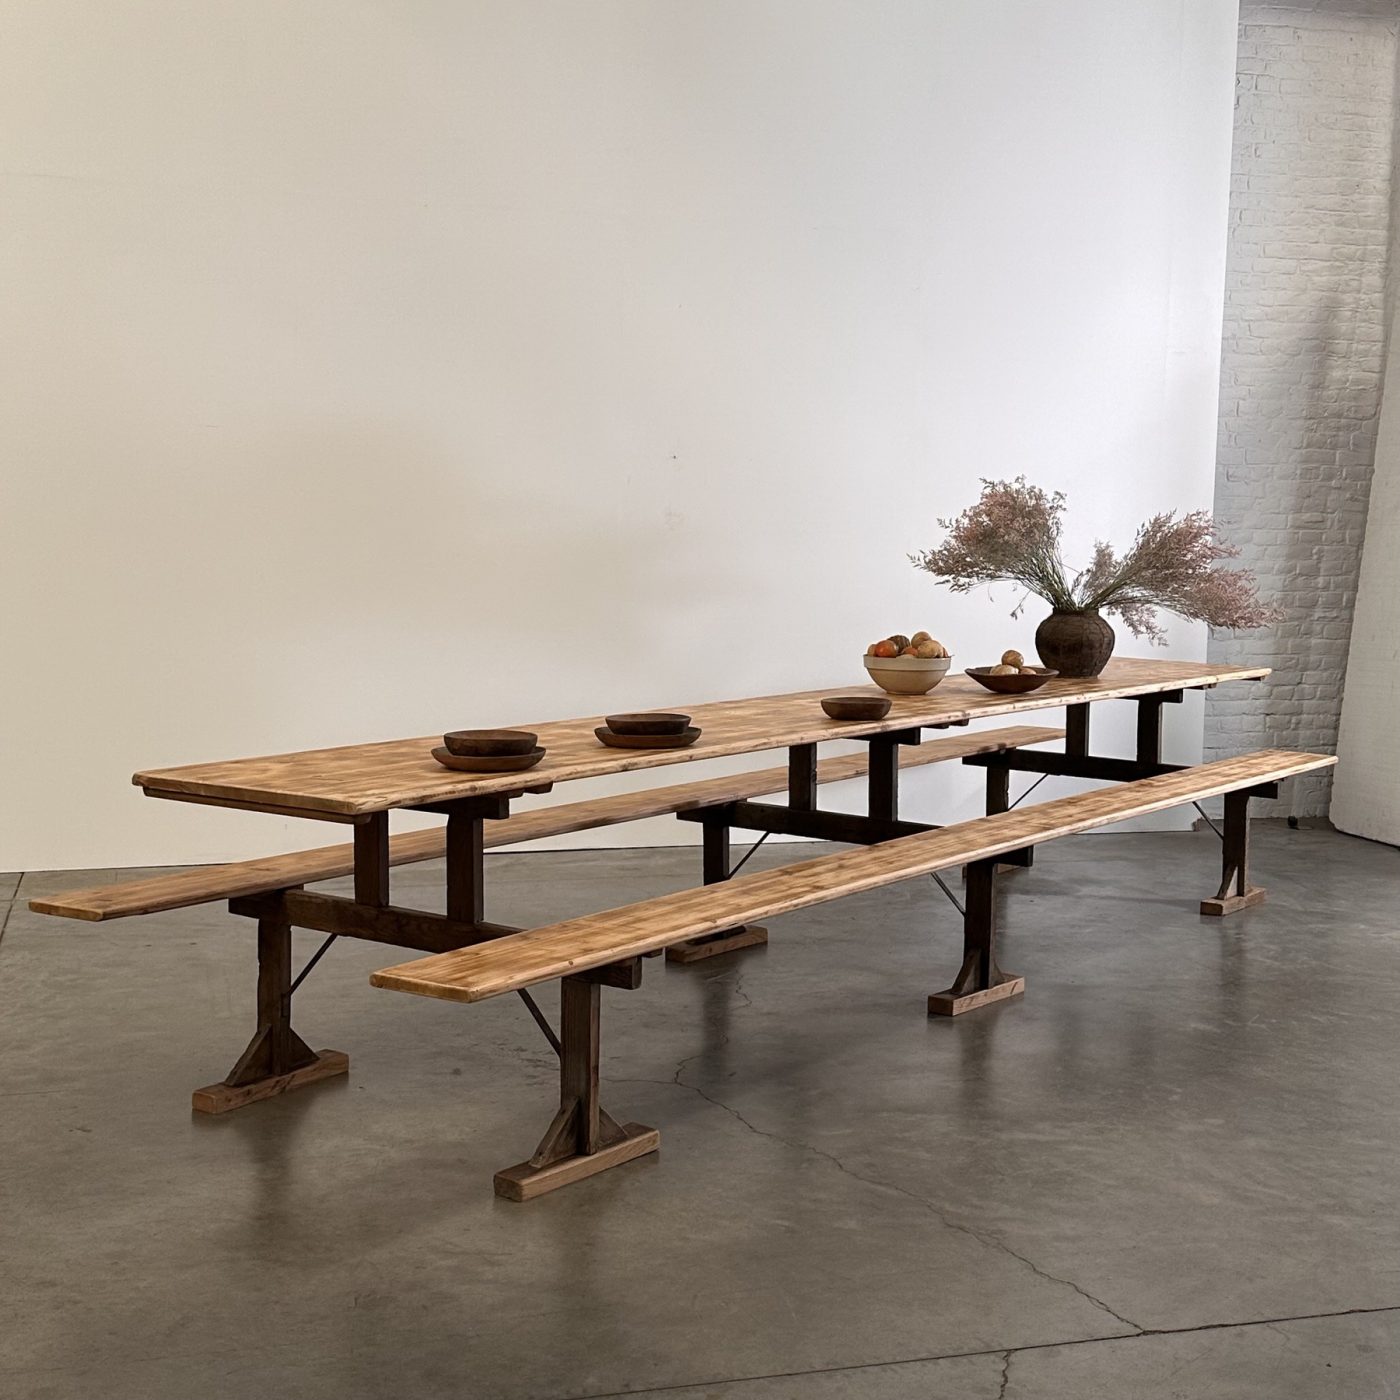 objet-vagabond-huge-table0008